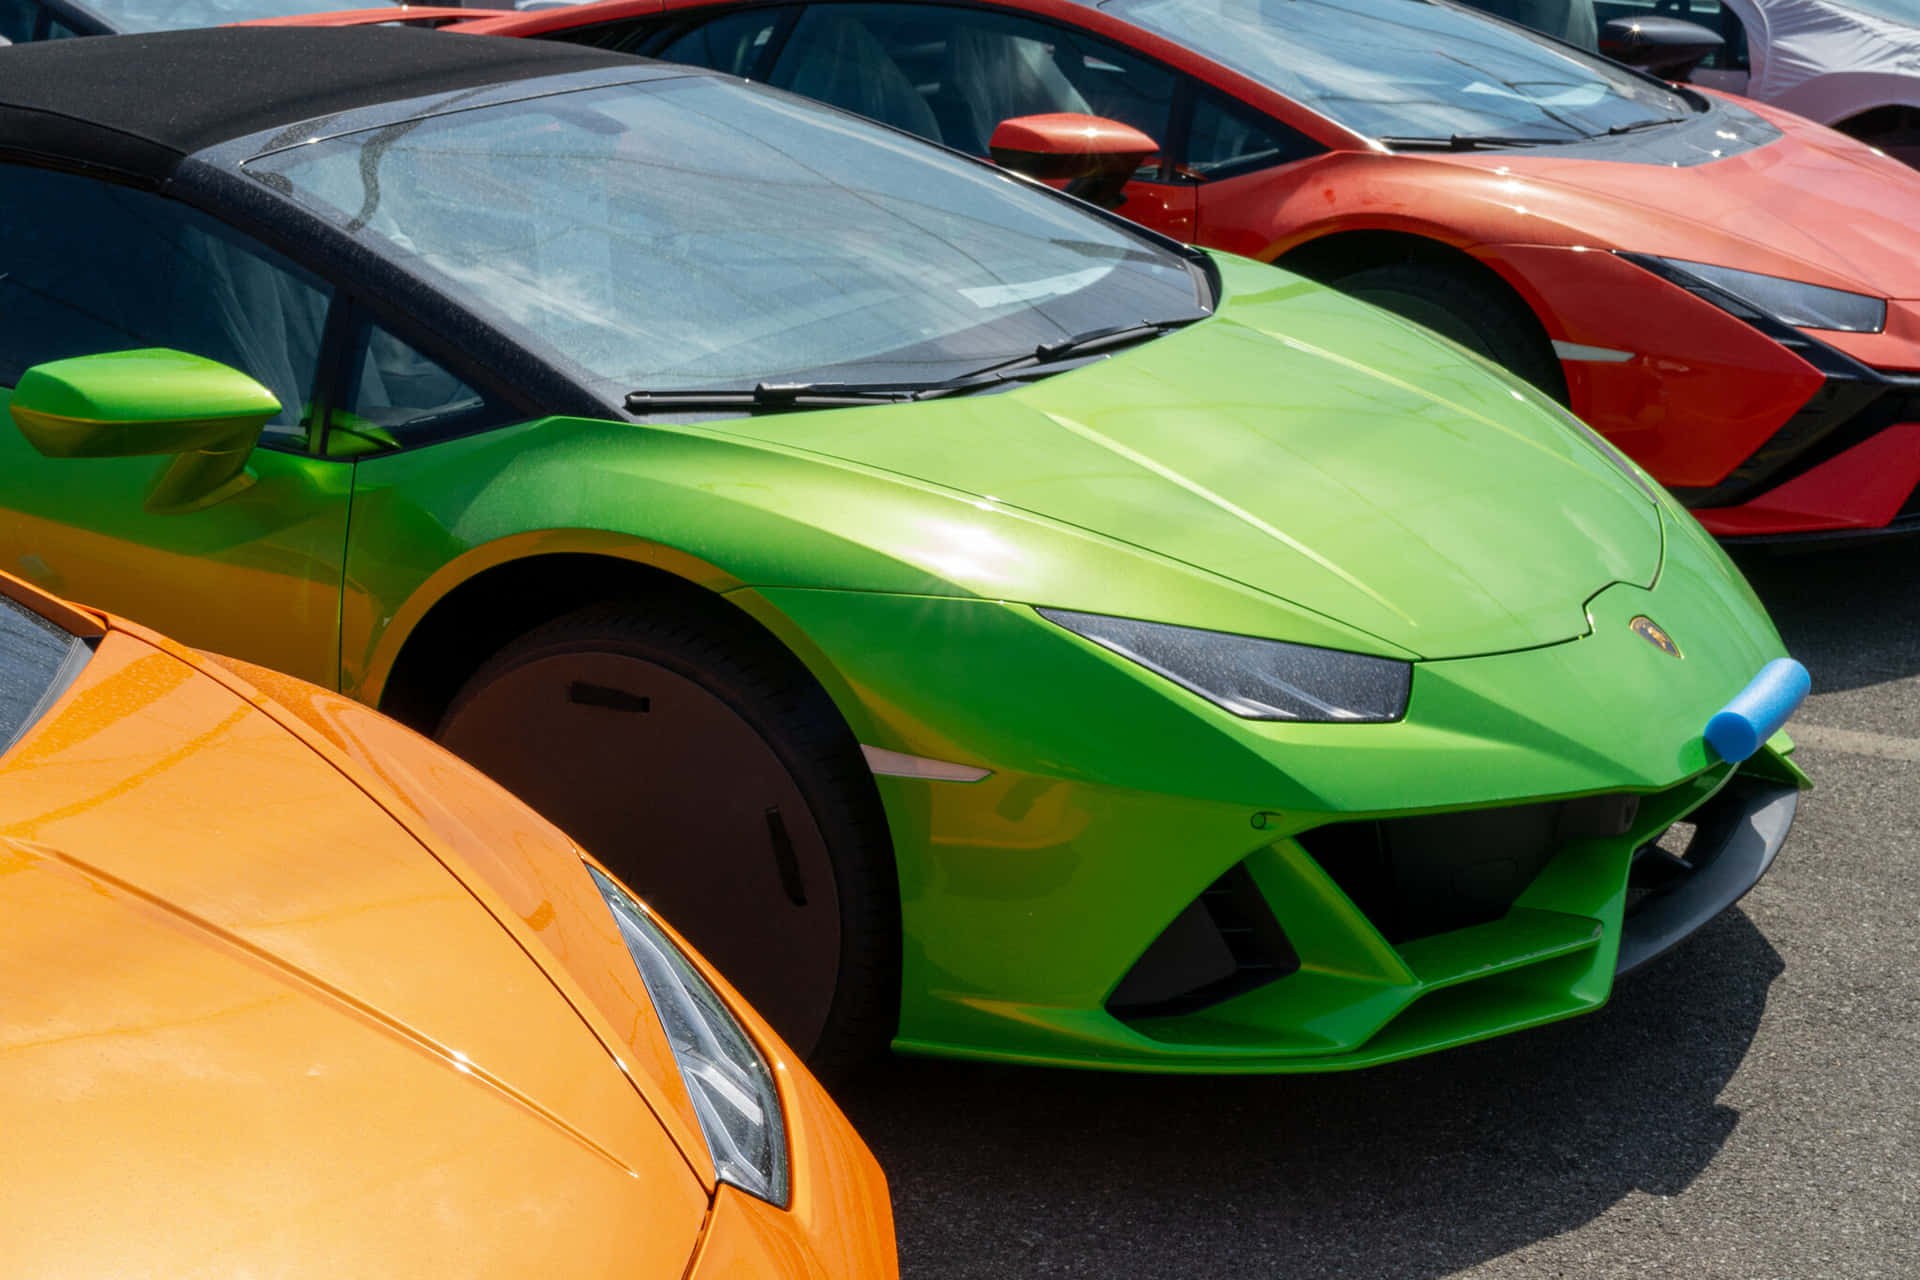 Unafila De Coloridos Autos Deportivos Estacionados En Un Estacionamiento